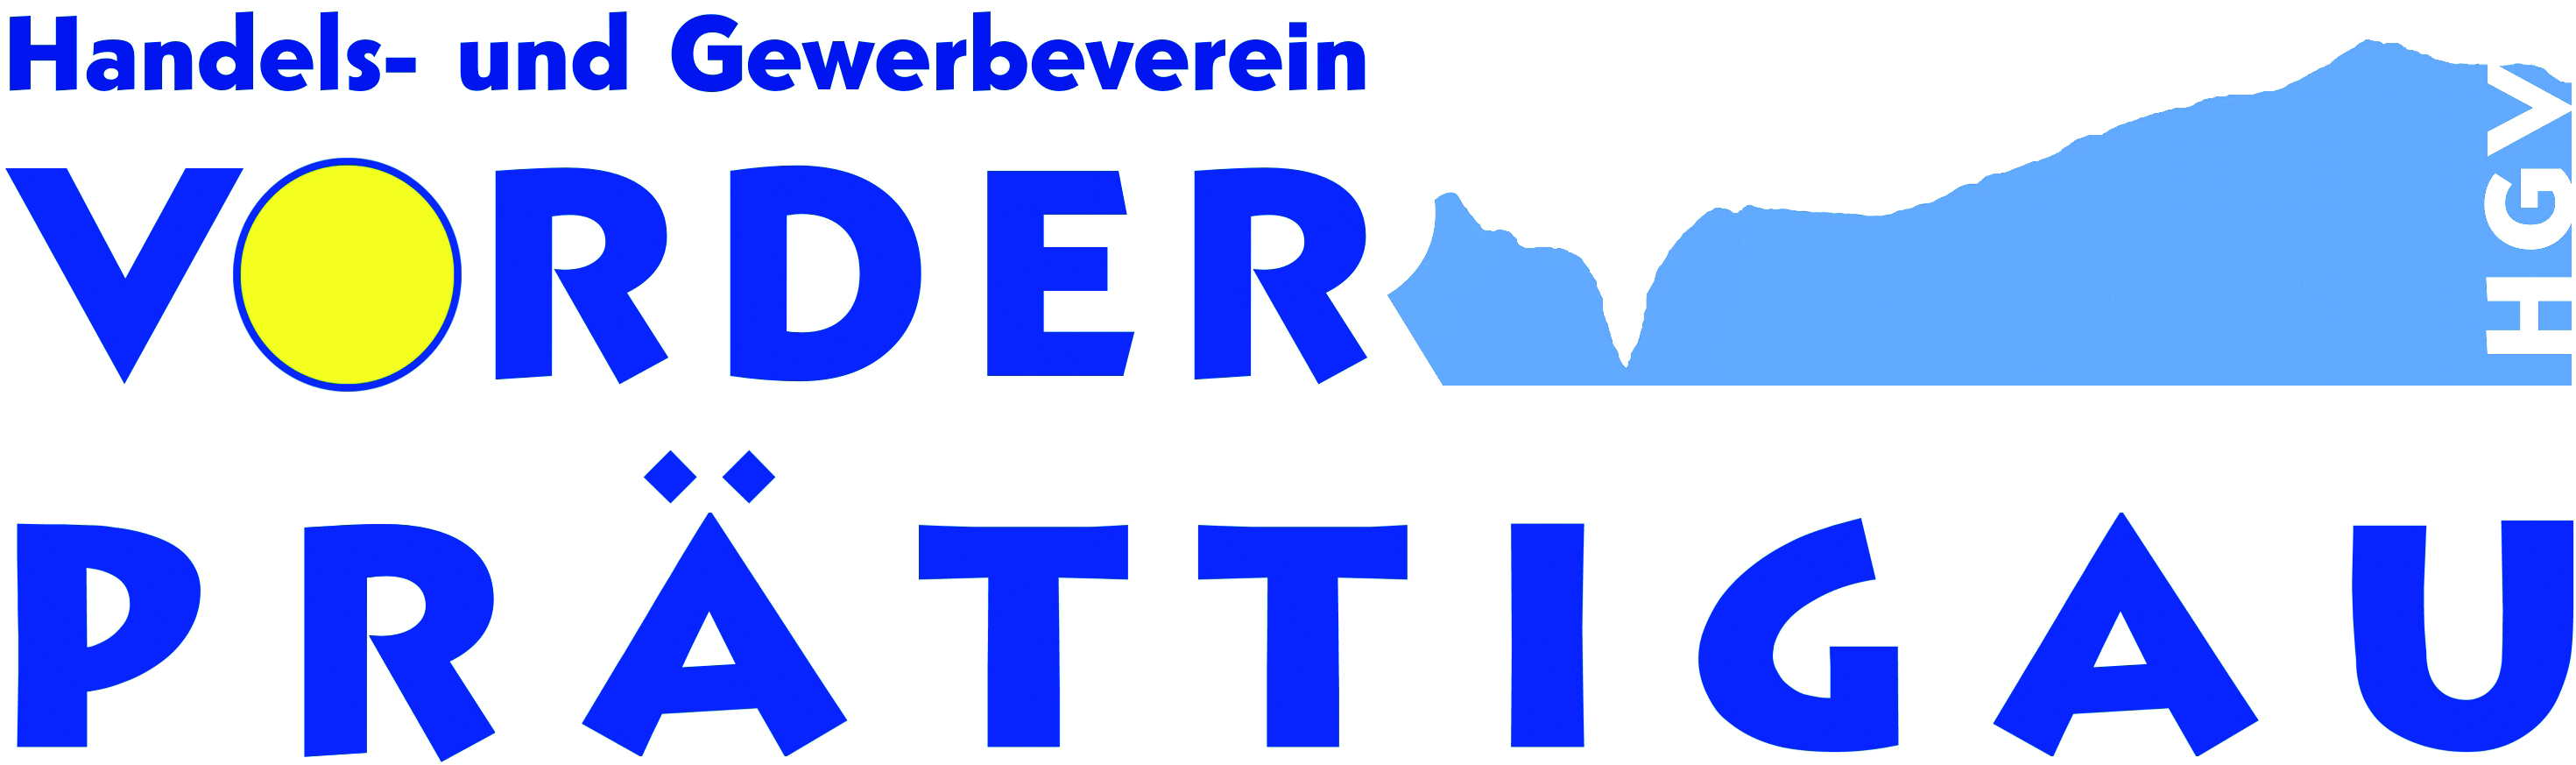 Logo - Handels- und Gewerbeverein Vorderprättigau